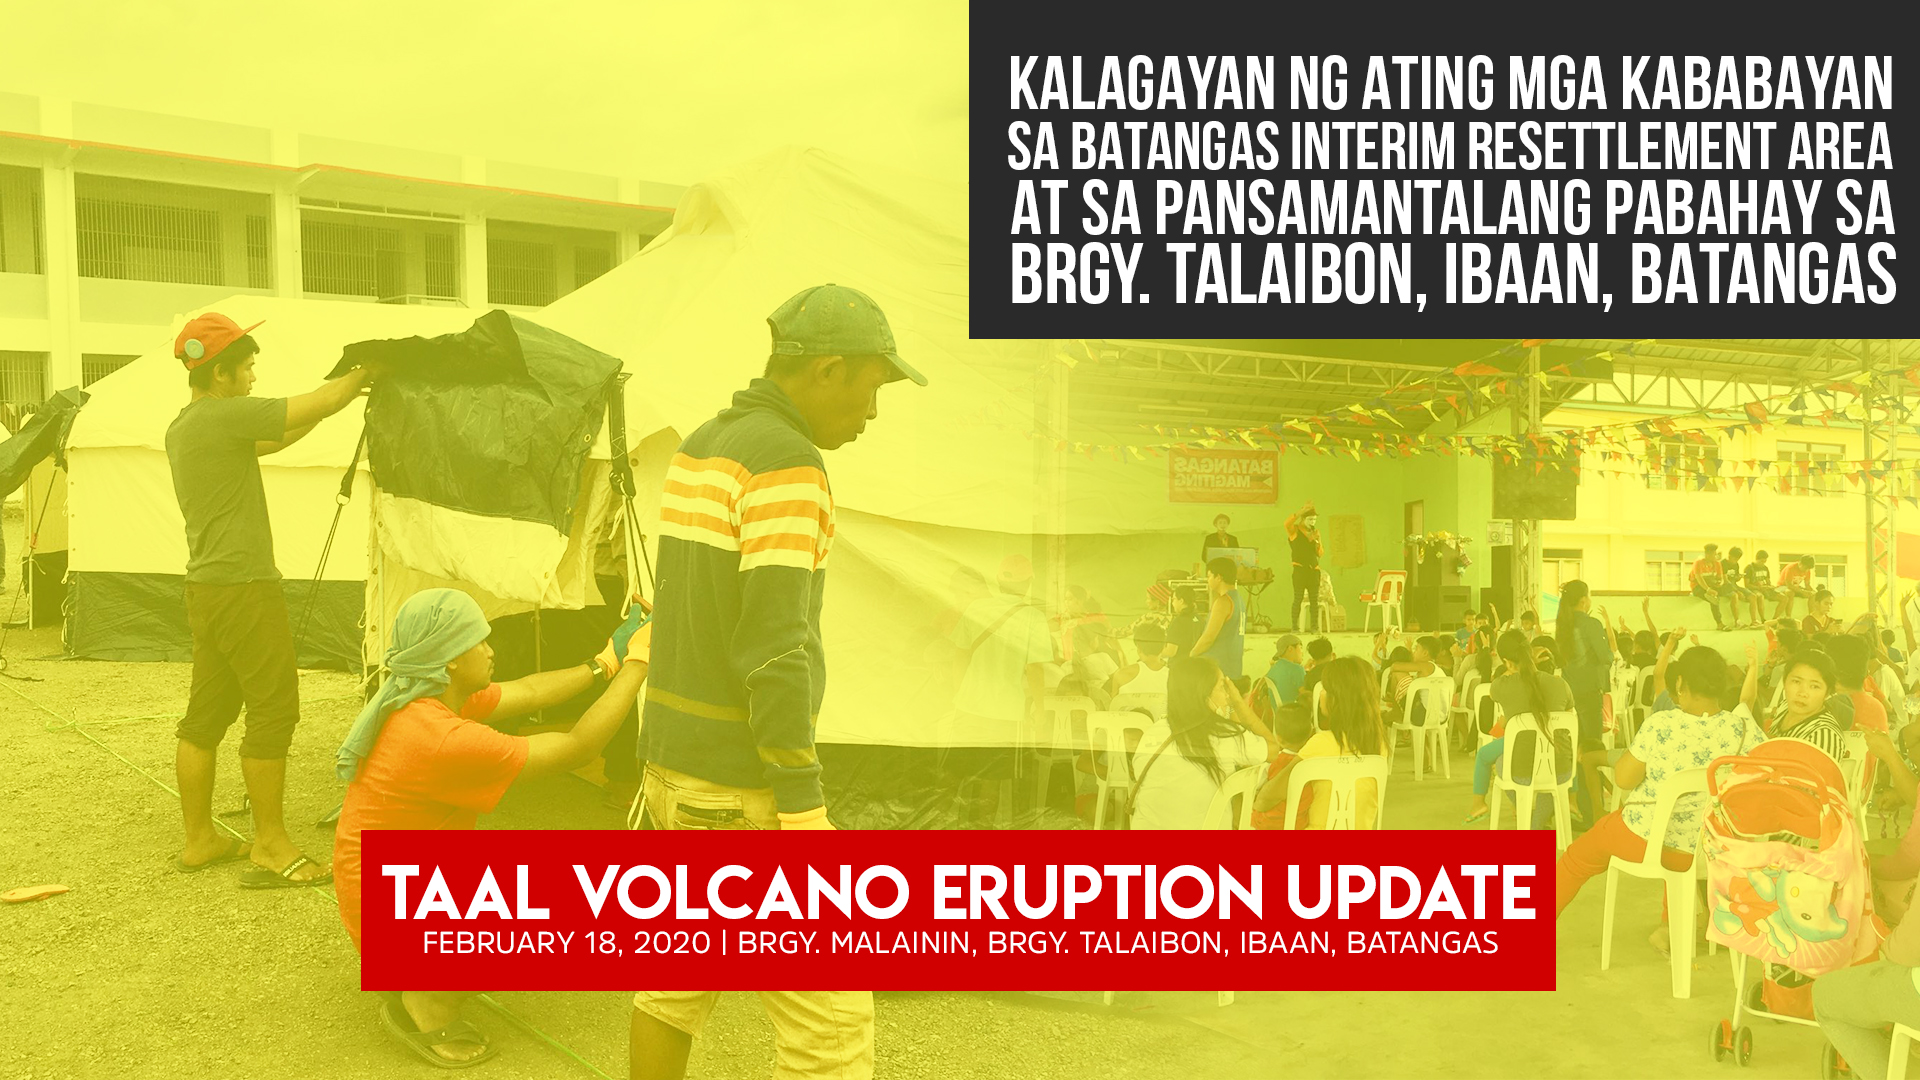 Kalagayan Ng Ating Mga Kababayan Taal Volcano Eruption Update February 18 2020 Wowbatangas Com Ang Official Website Ng Batangueno